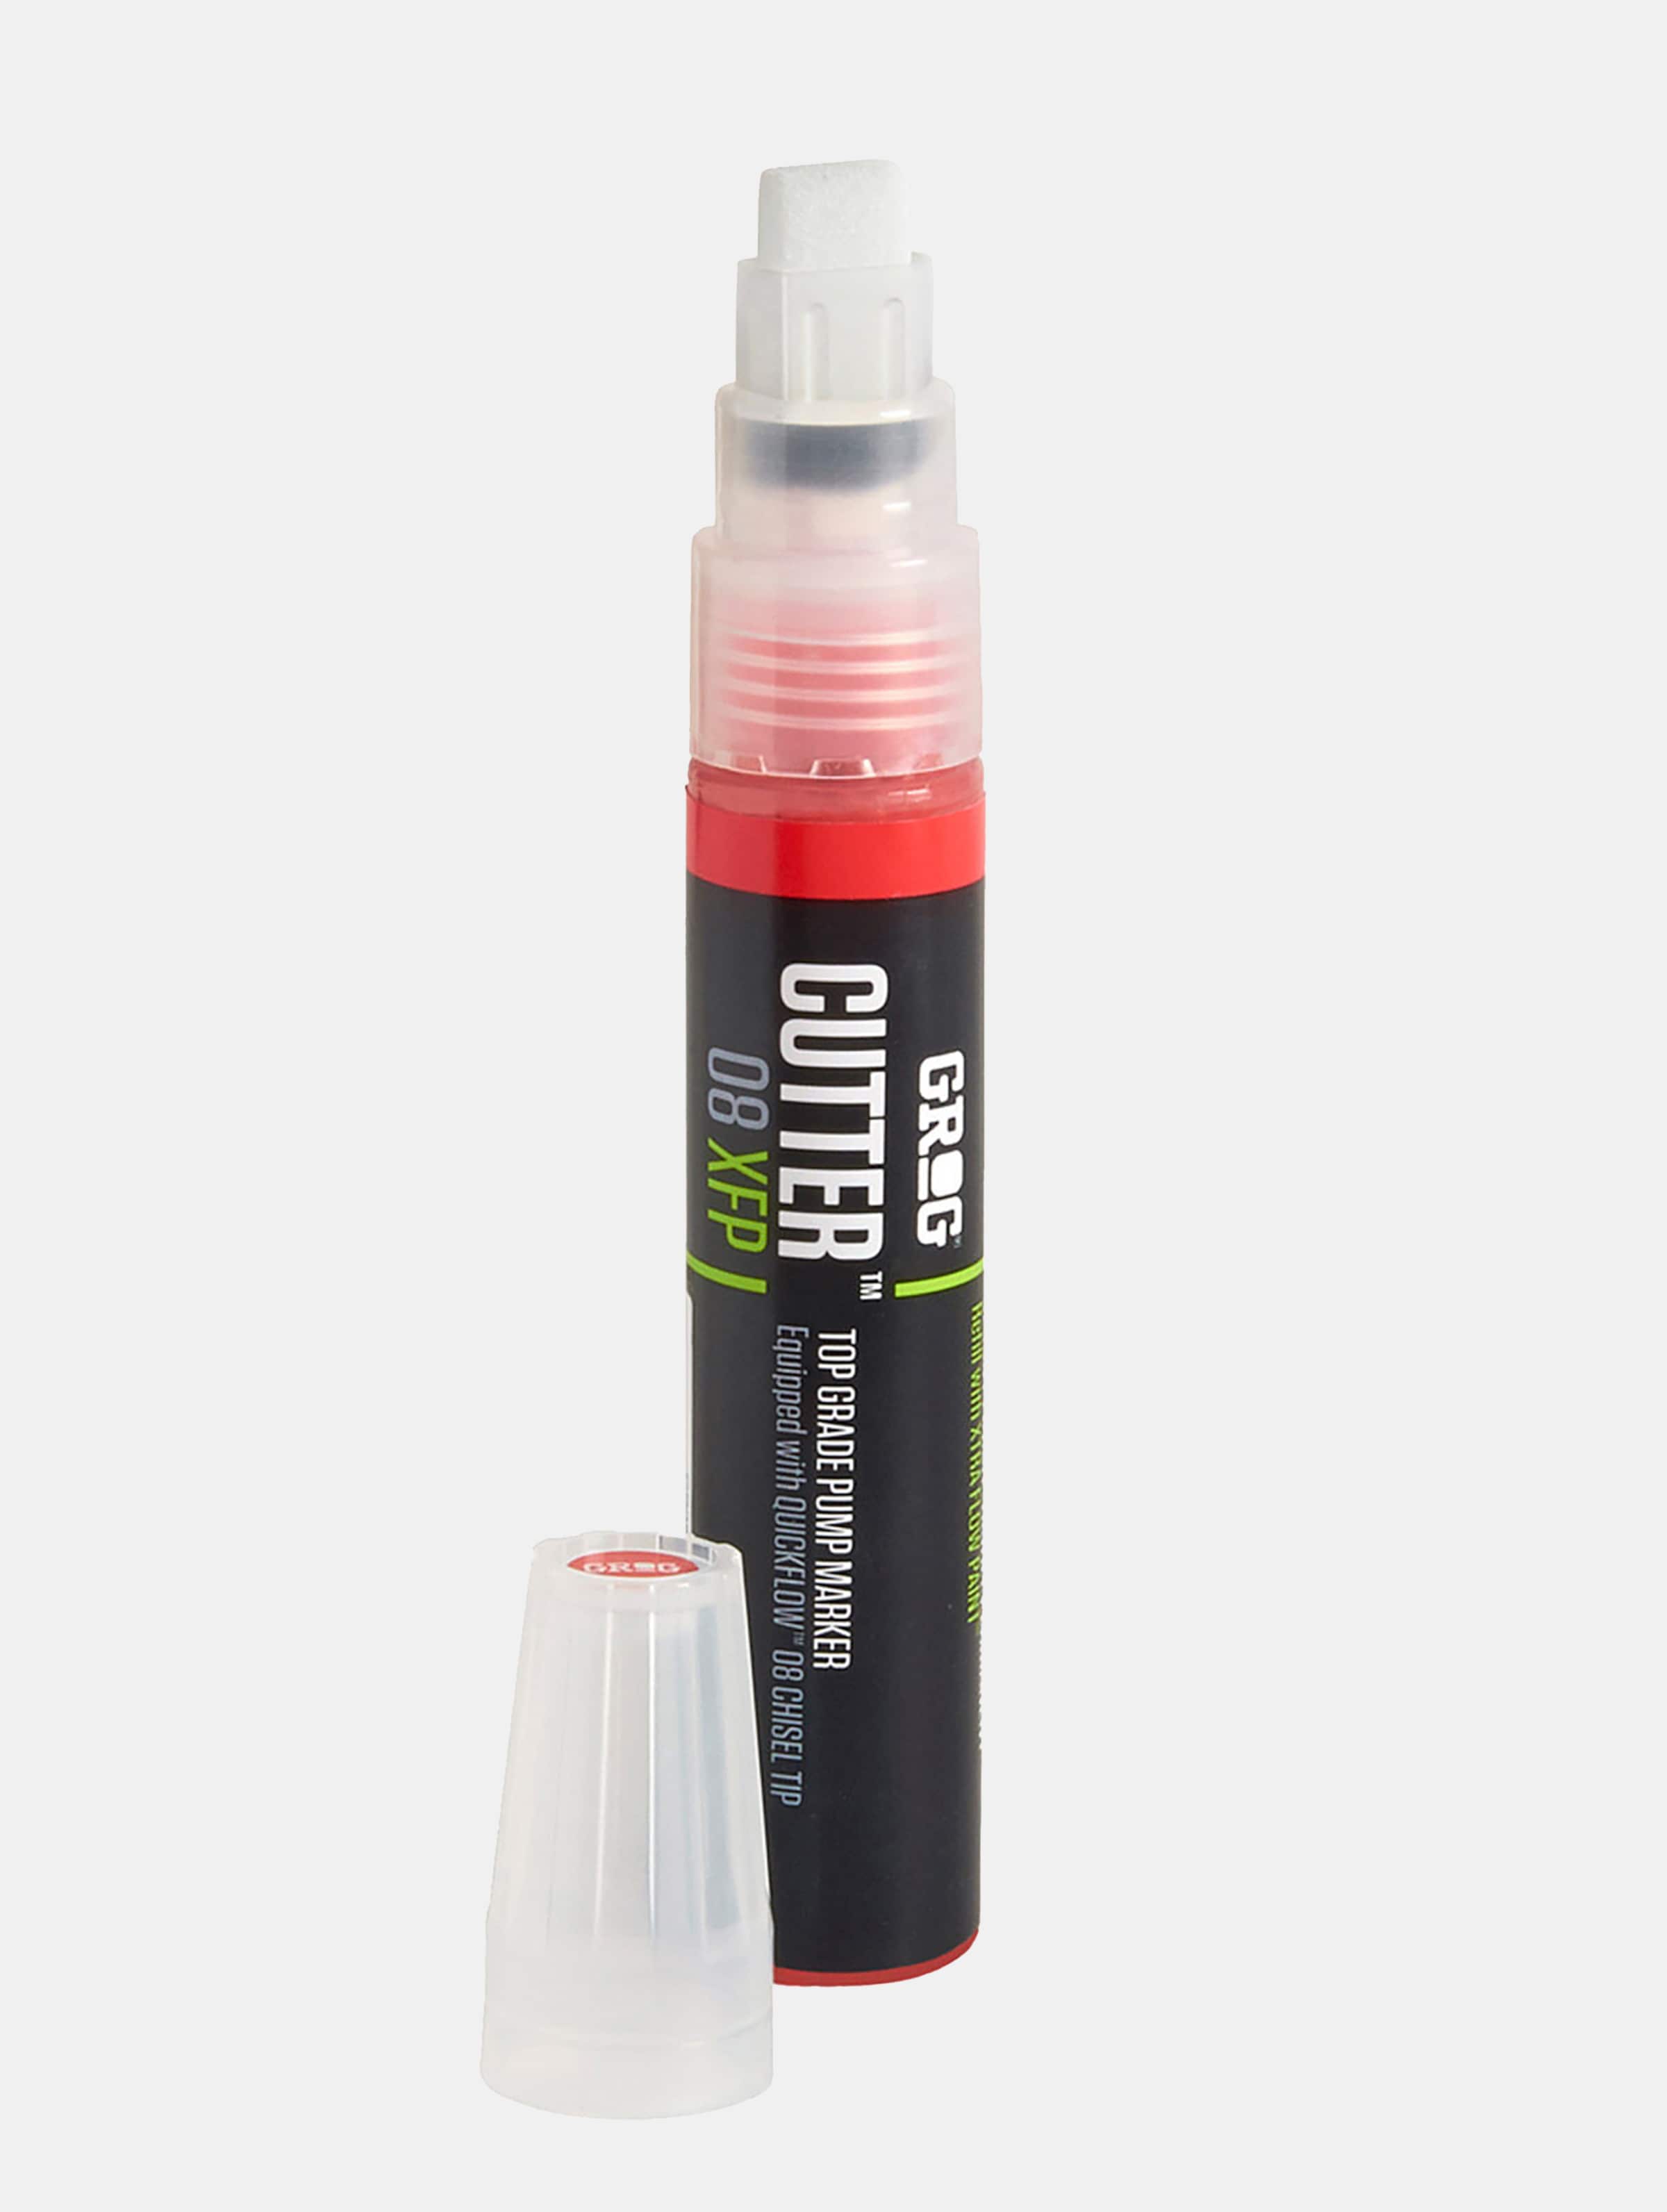 Grog Cutter 08 XFP - Verfstift - Beitelpunt van 8 mm - hooggepigmenteerde verf op alcoholbasis - Neon Green